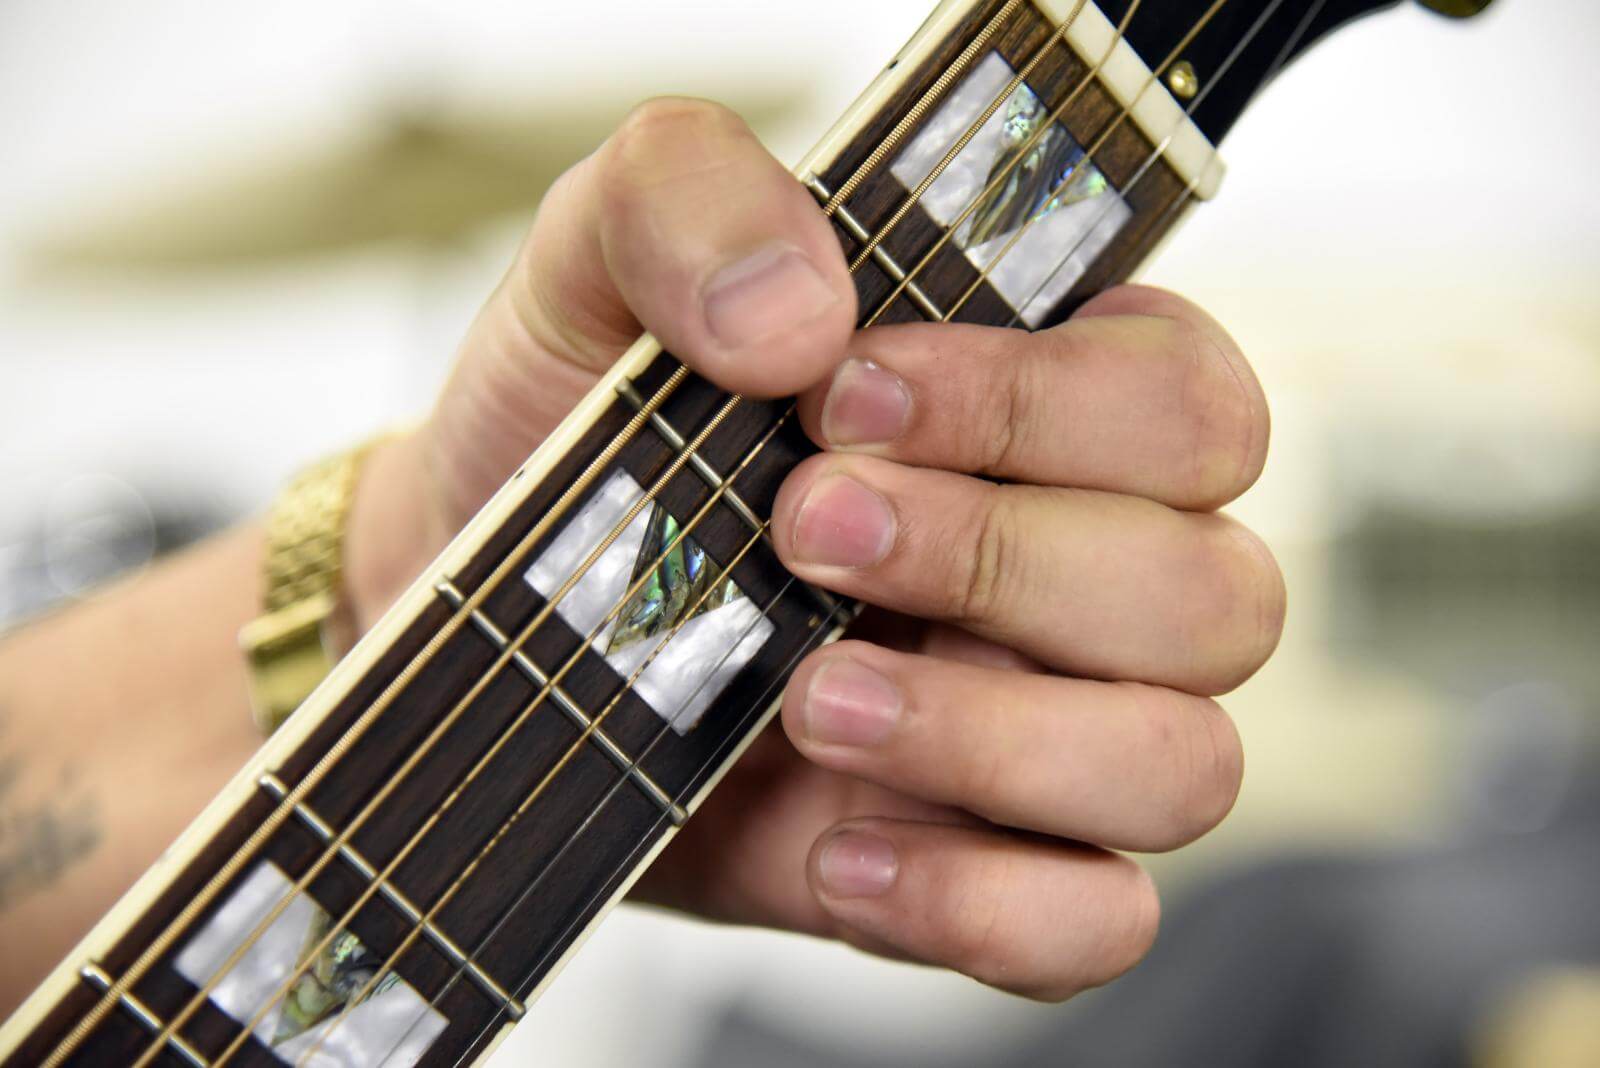 Billede af Johns hånd som spiller guitar helt tæt på 